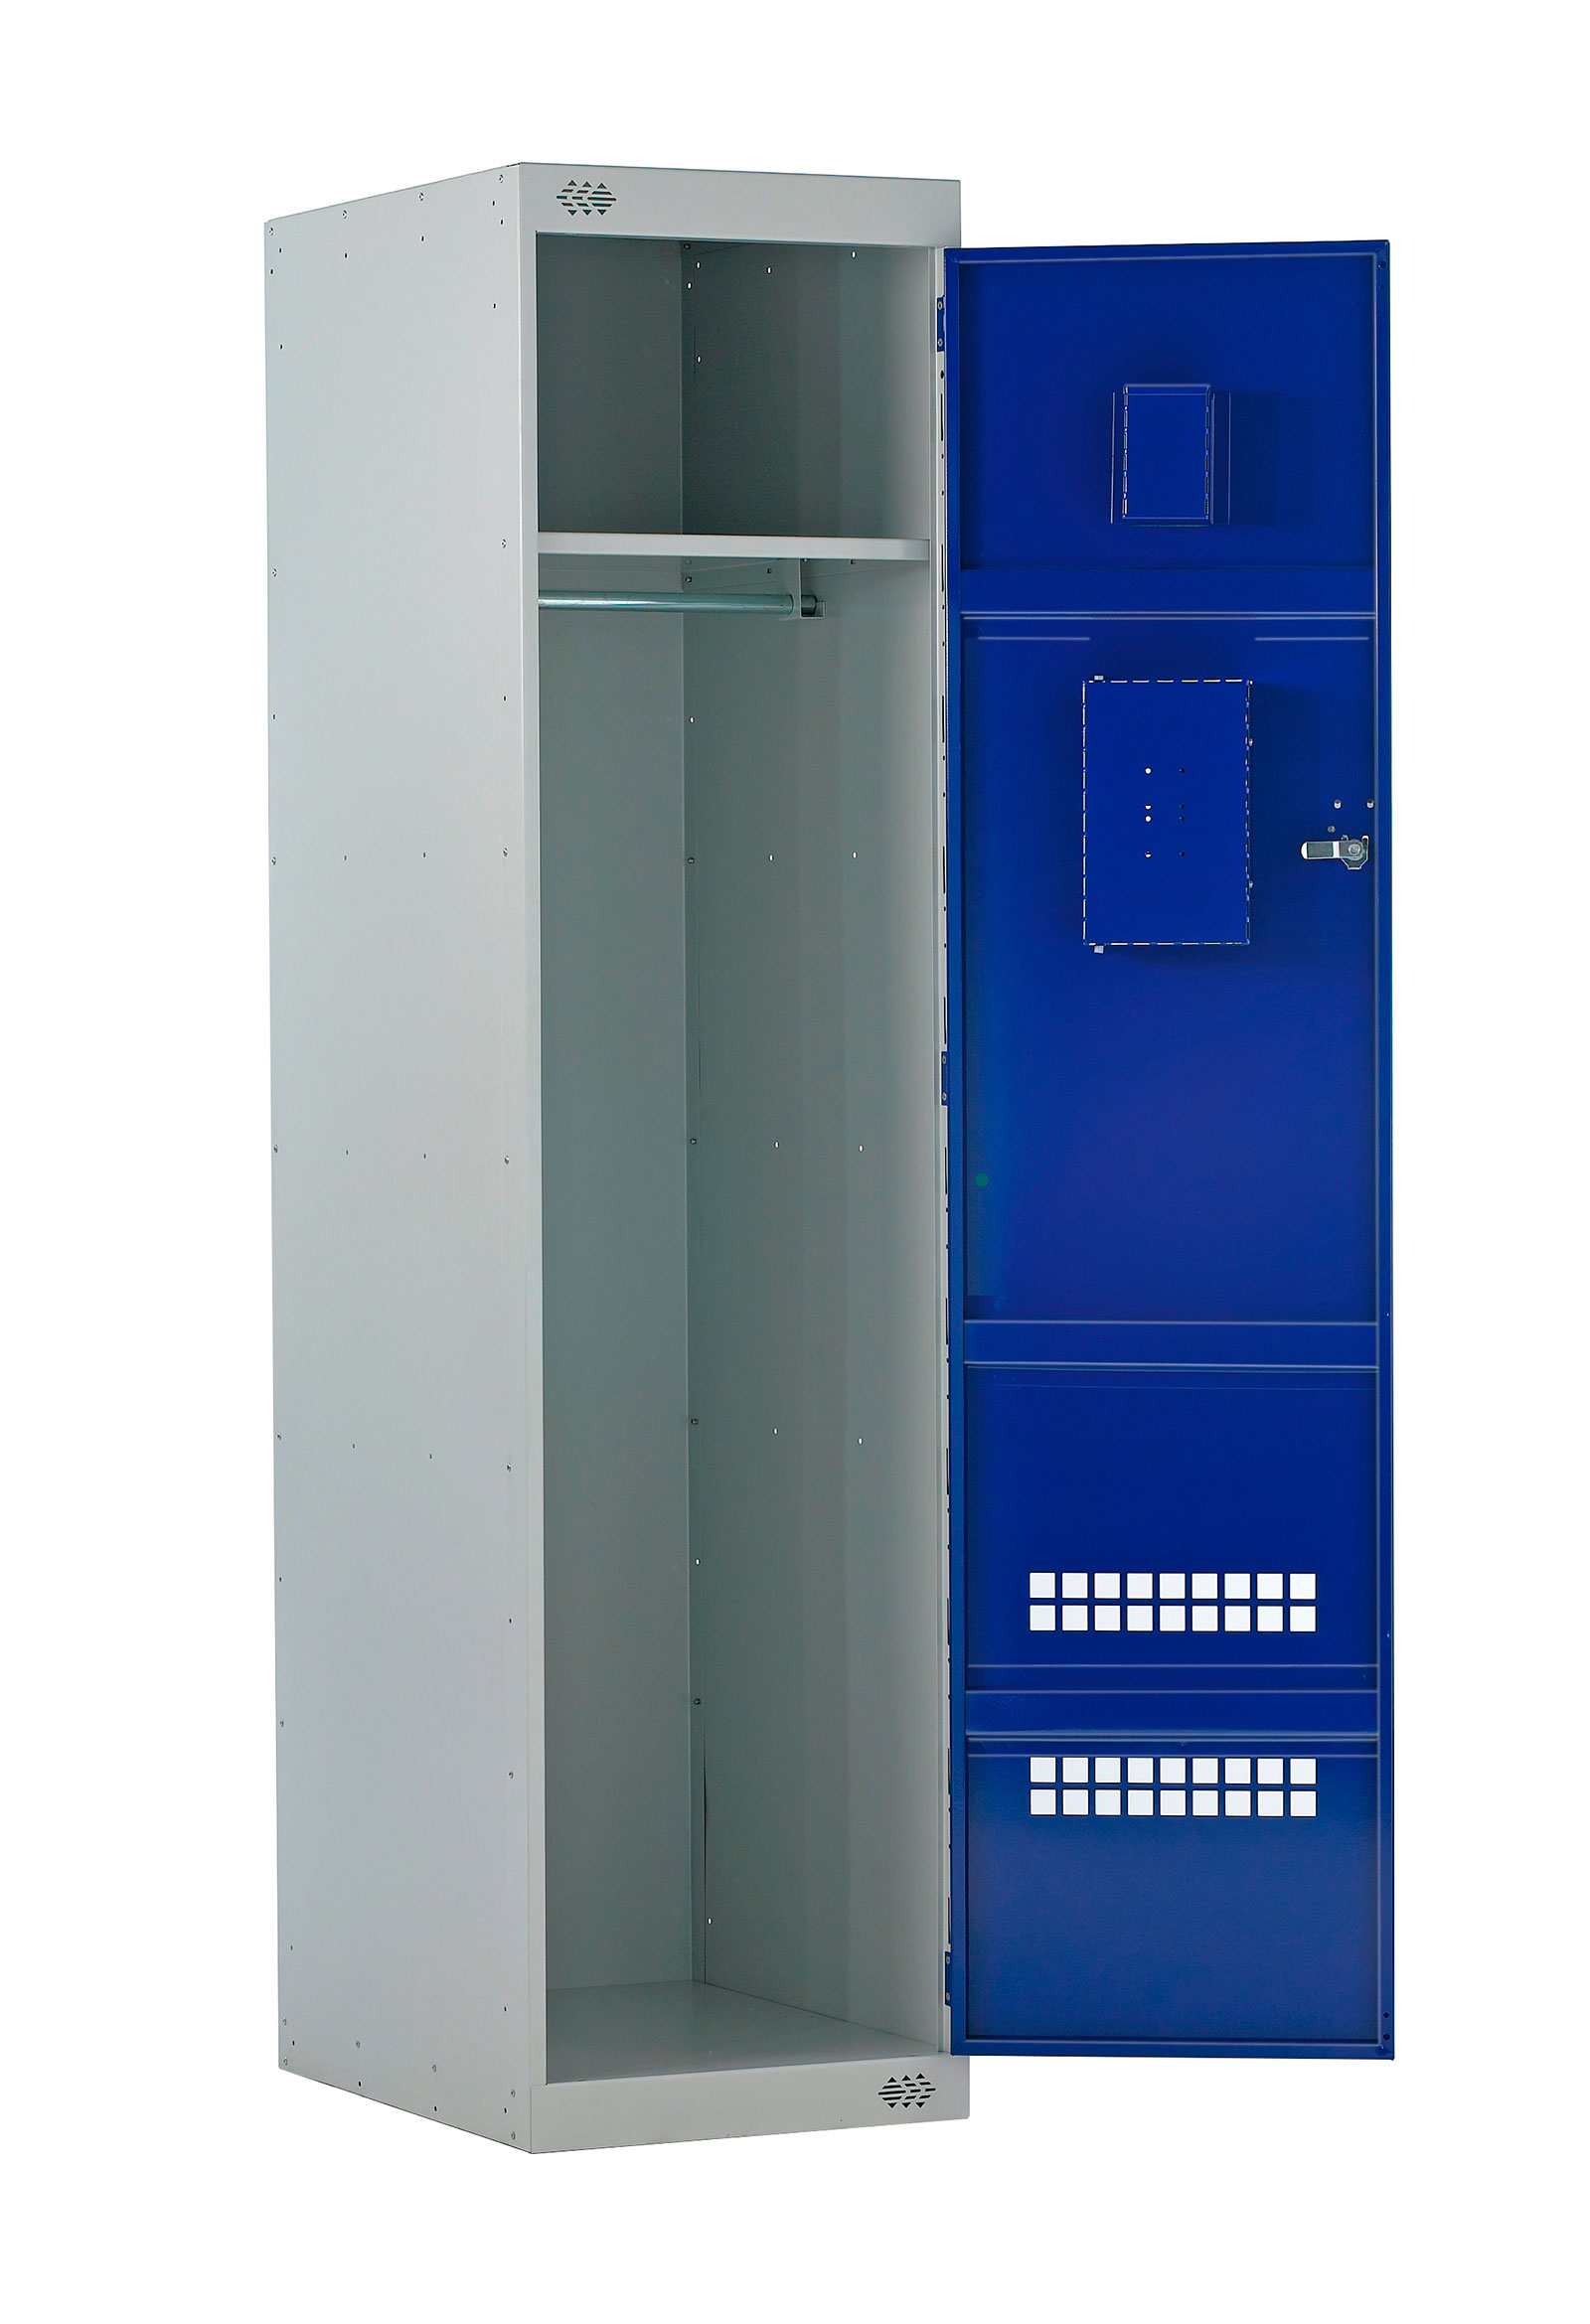 Portes semi-perforés casiers coffres de sécurité | POLYPAL STORAGE SYSTEMS